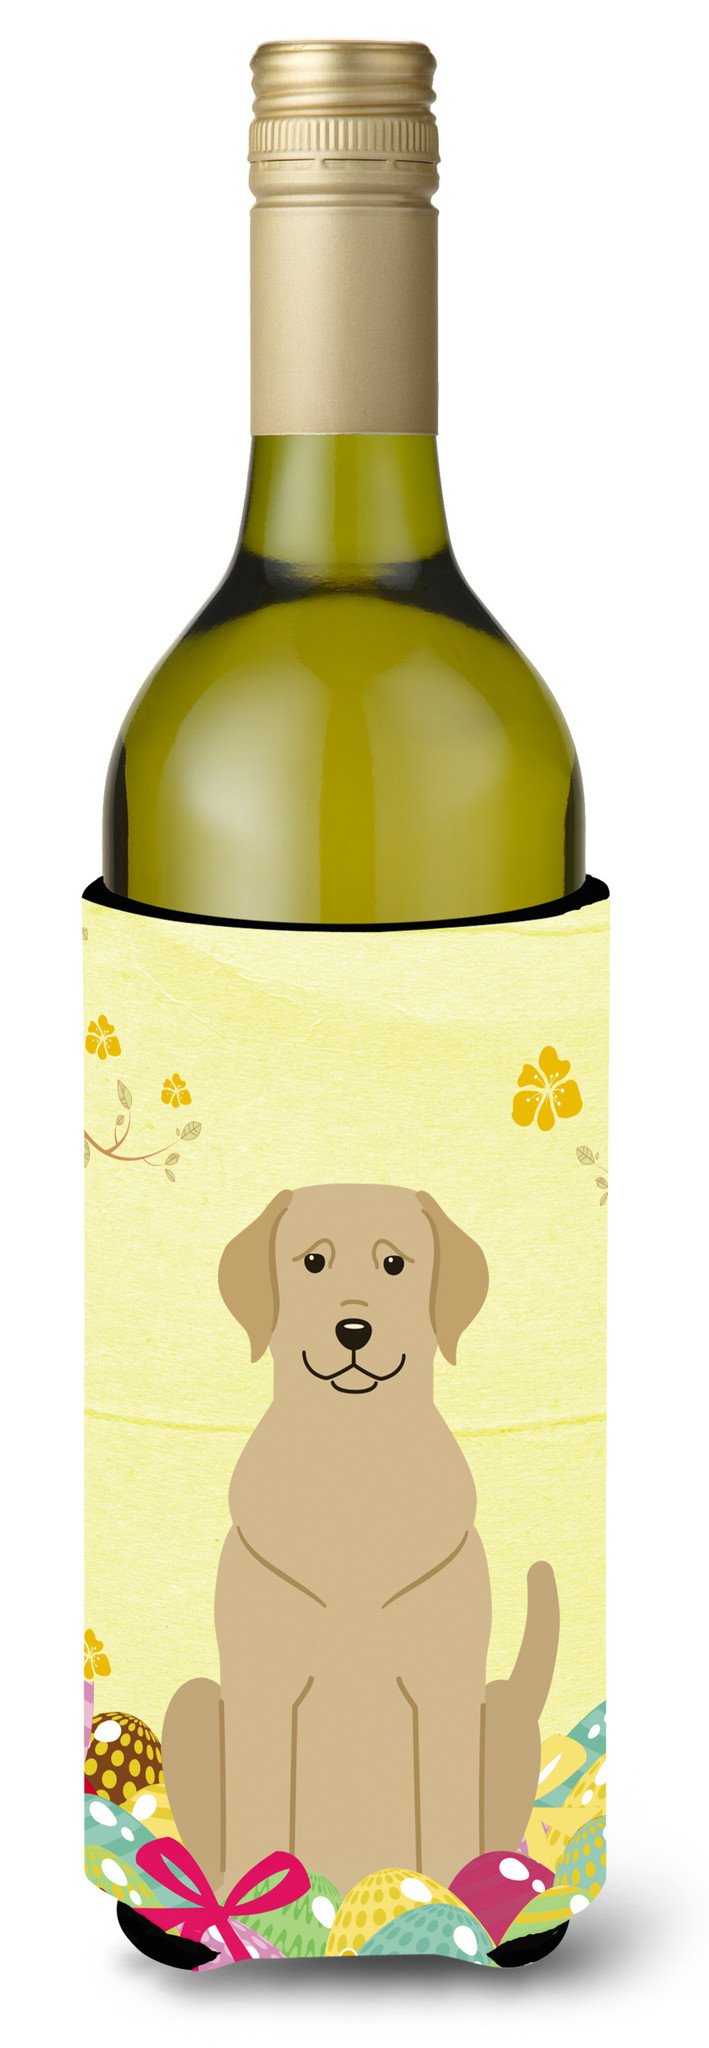 Easter Eggs Yellow Labrador Wine Bottle Beverge Insulator Hugger BB6055LITERK by Caroline's Treasures